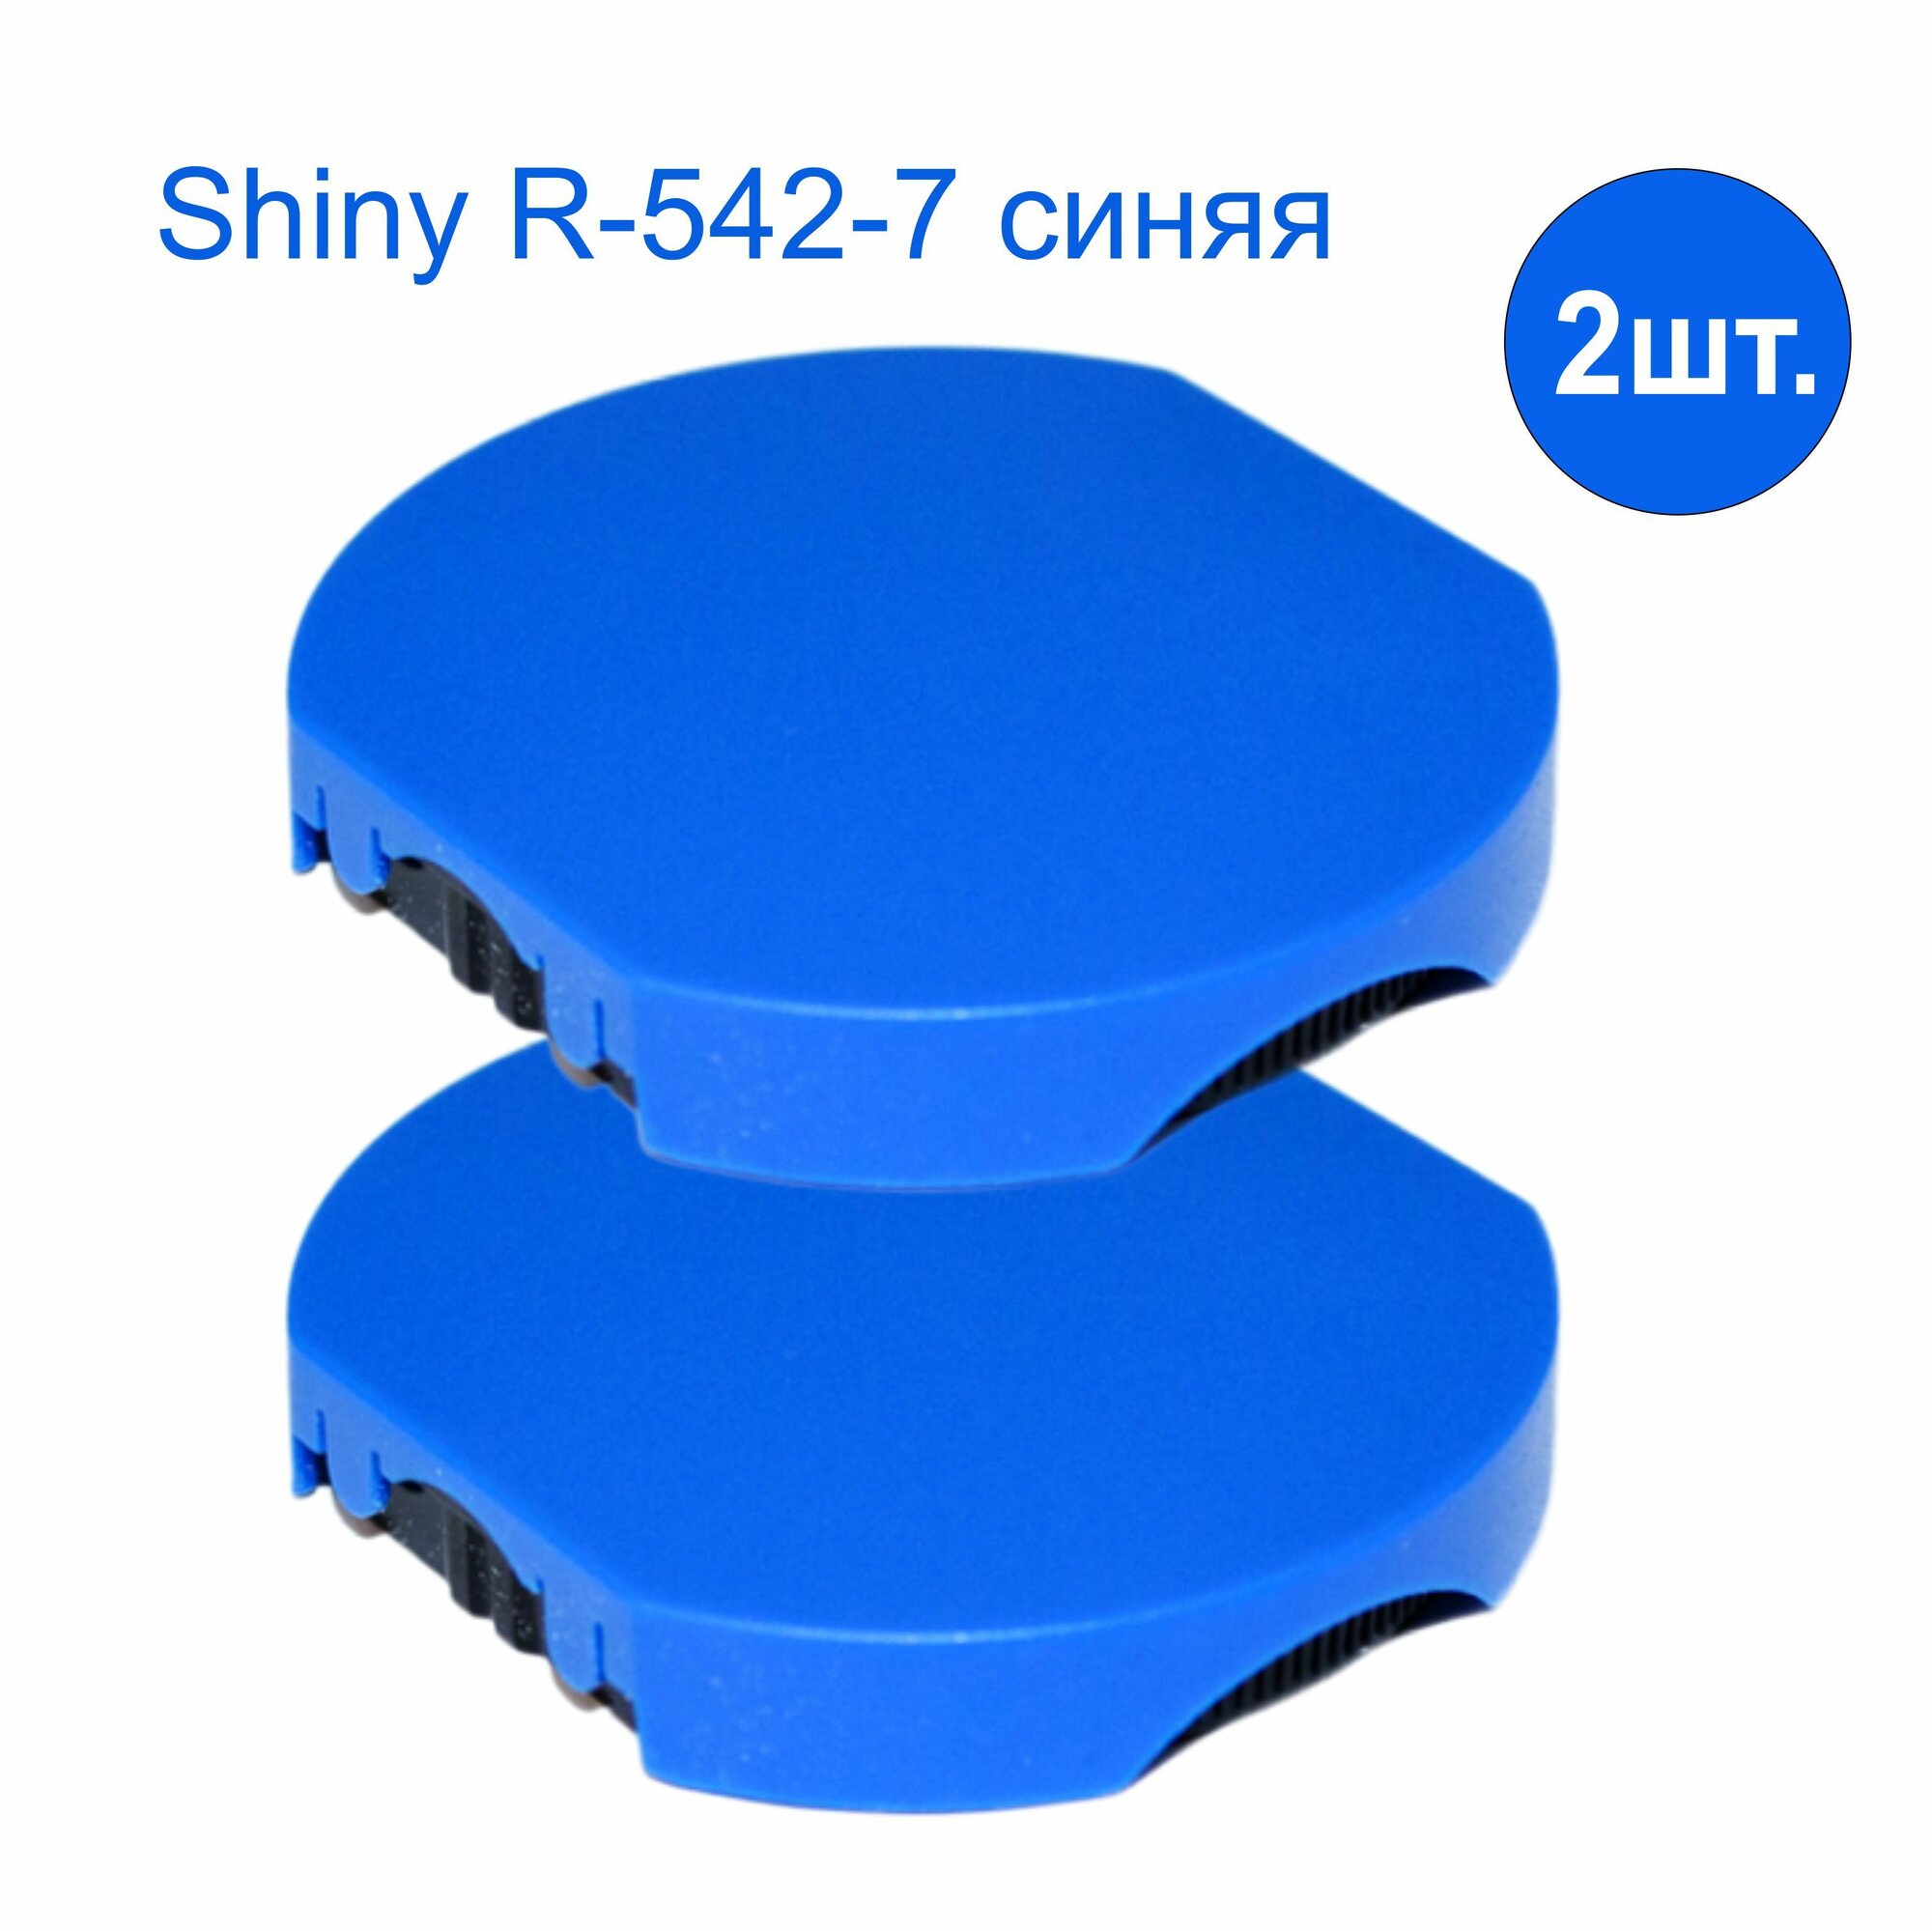 Штемпельная подушка Shiny R-542-7 для R-542 синяя 2 шт. комплект